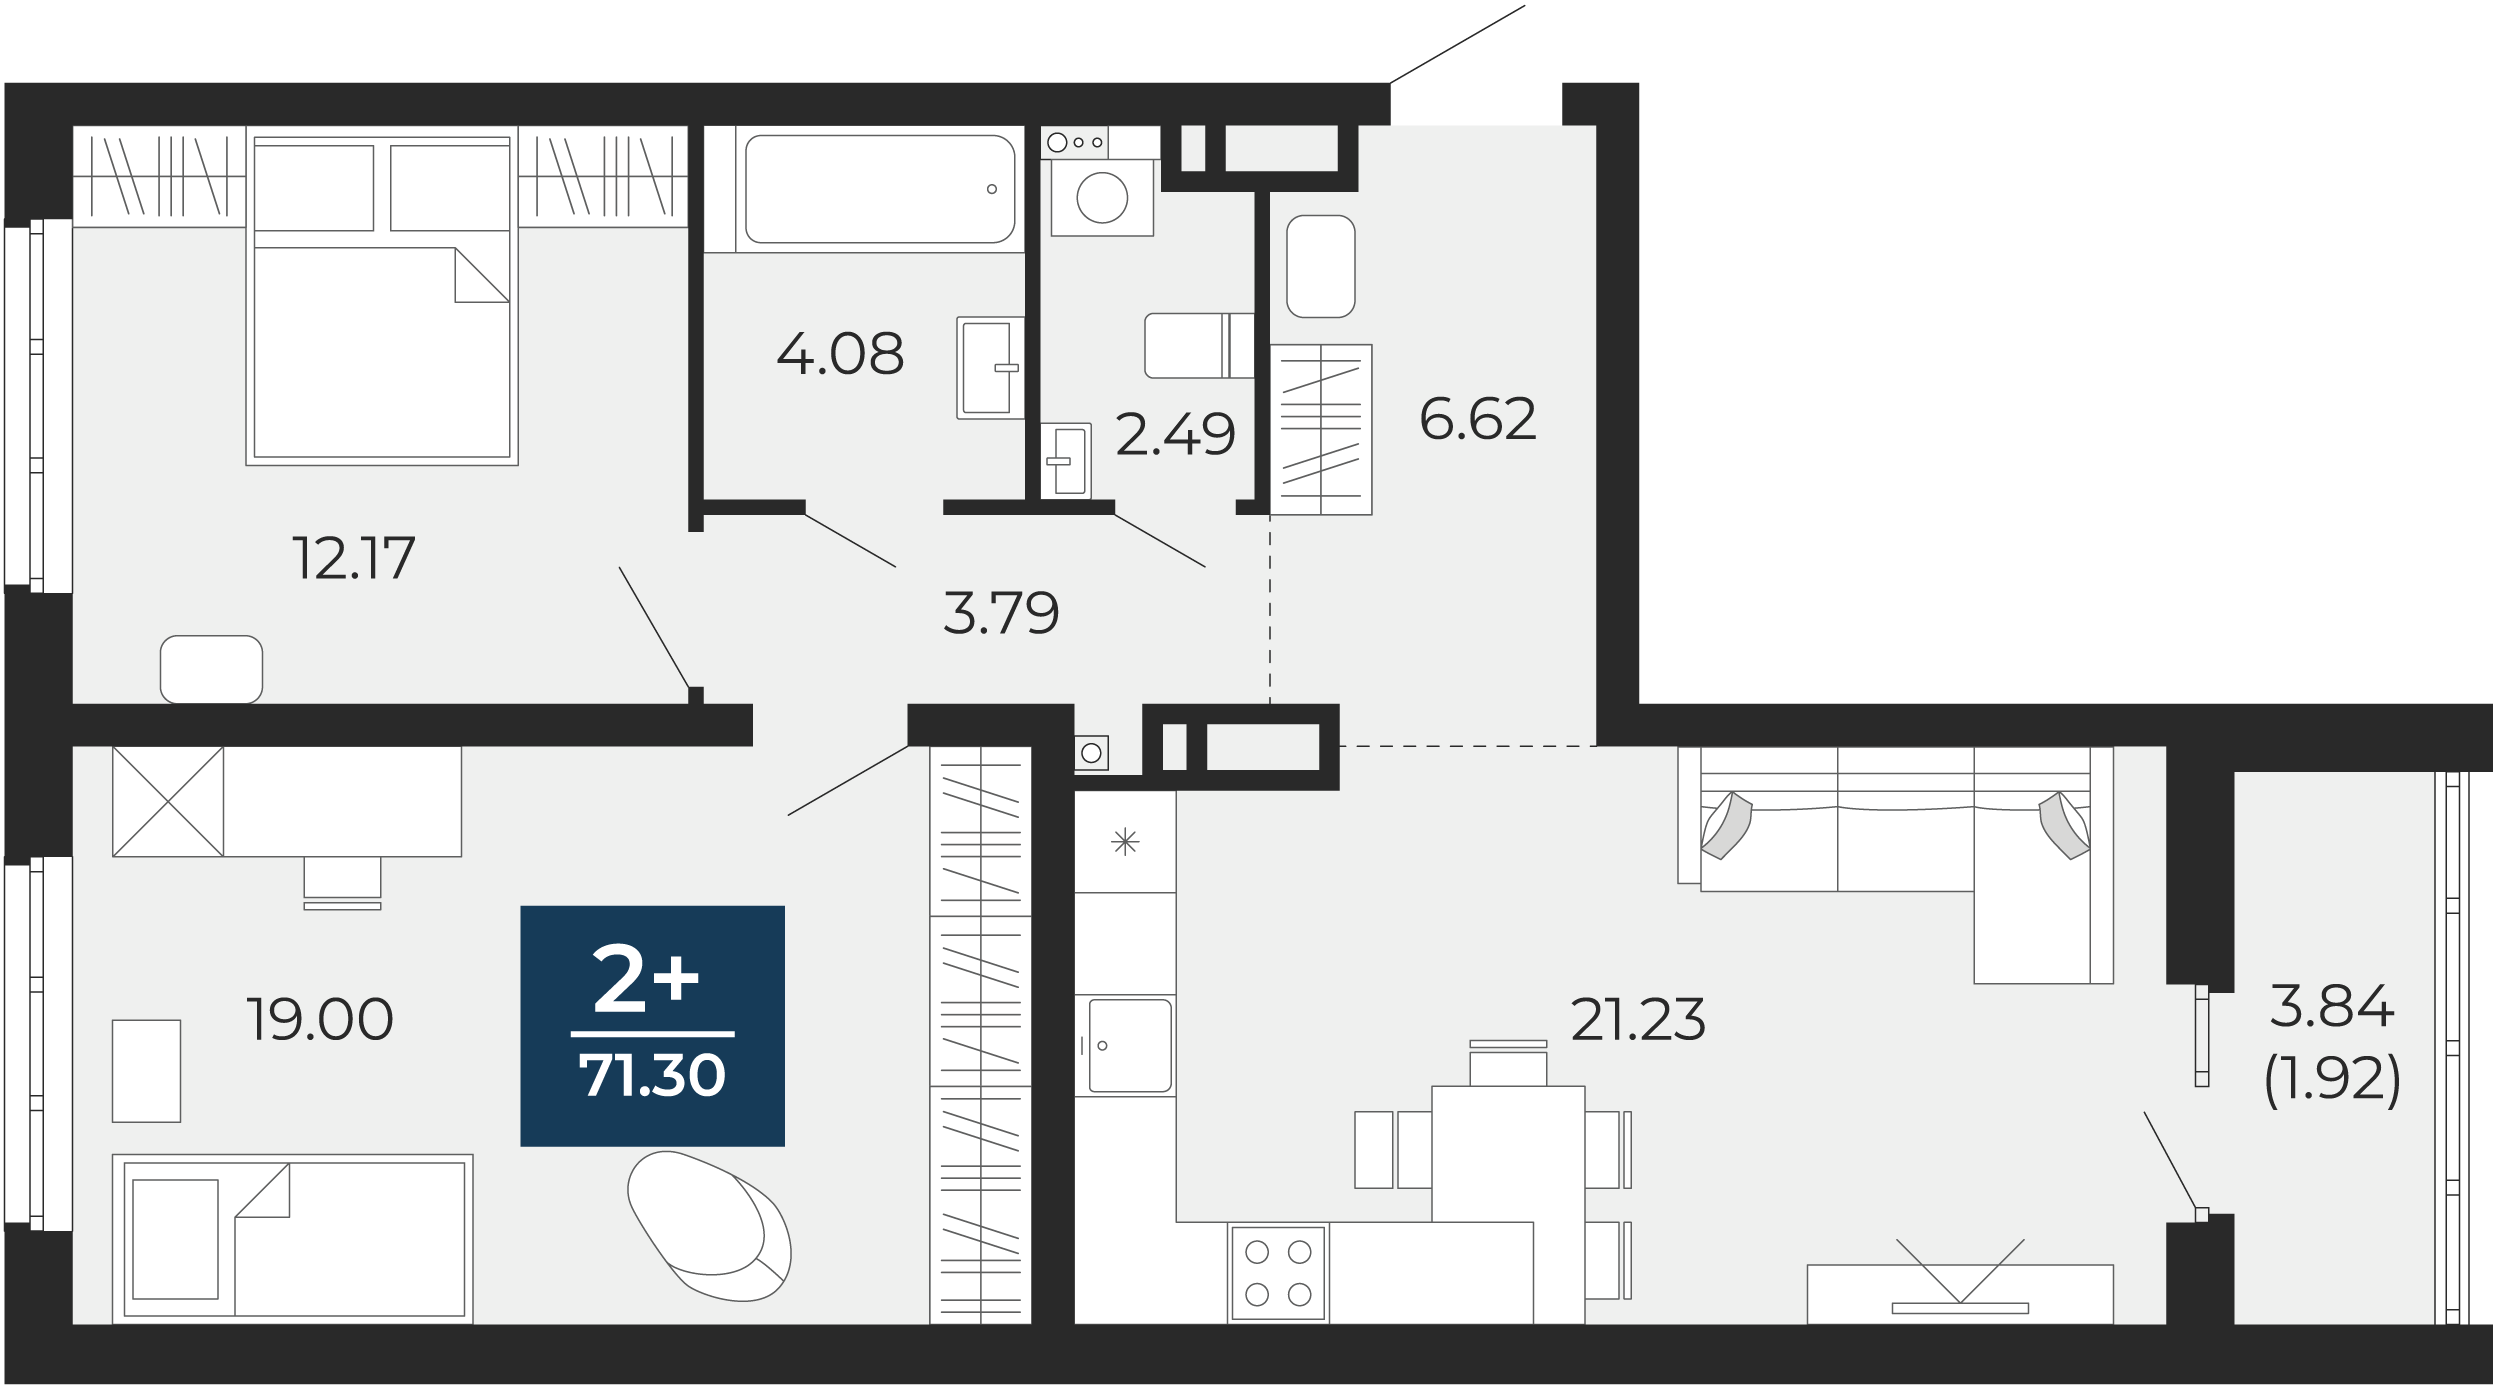 Квартира № 121, 2-комнатная, 71.3 кв. м, 12 этаж